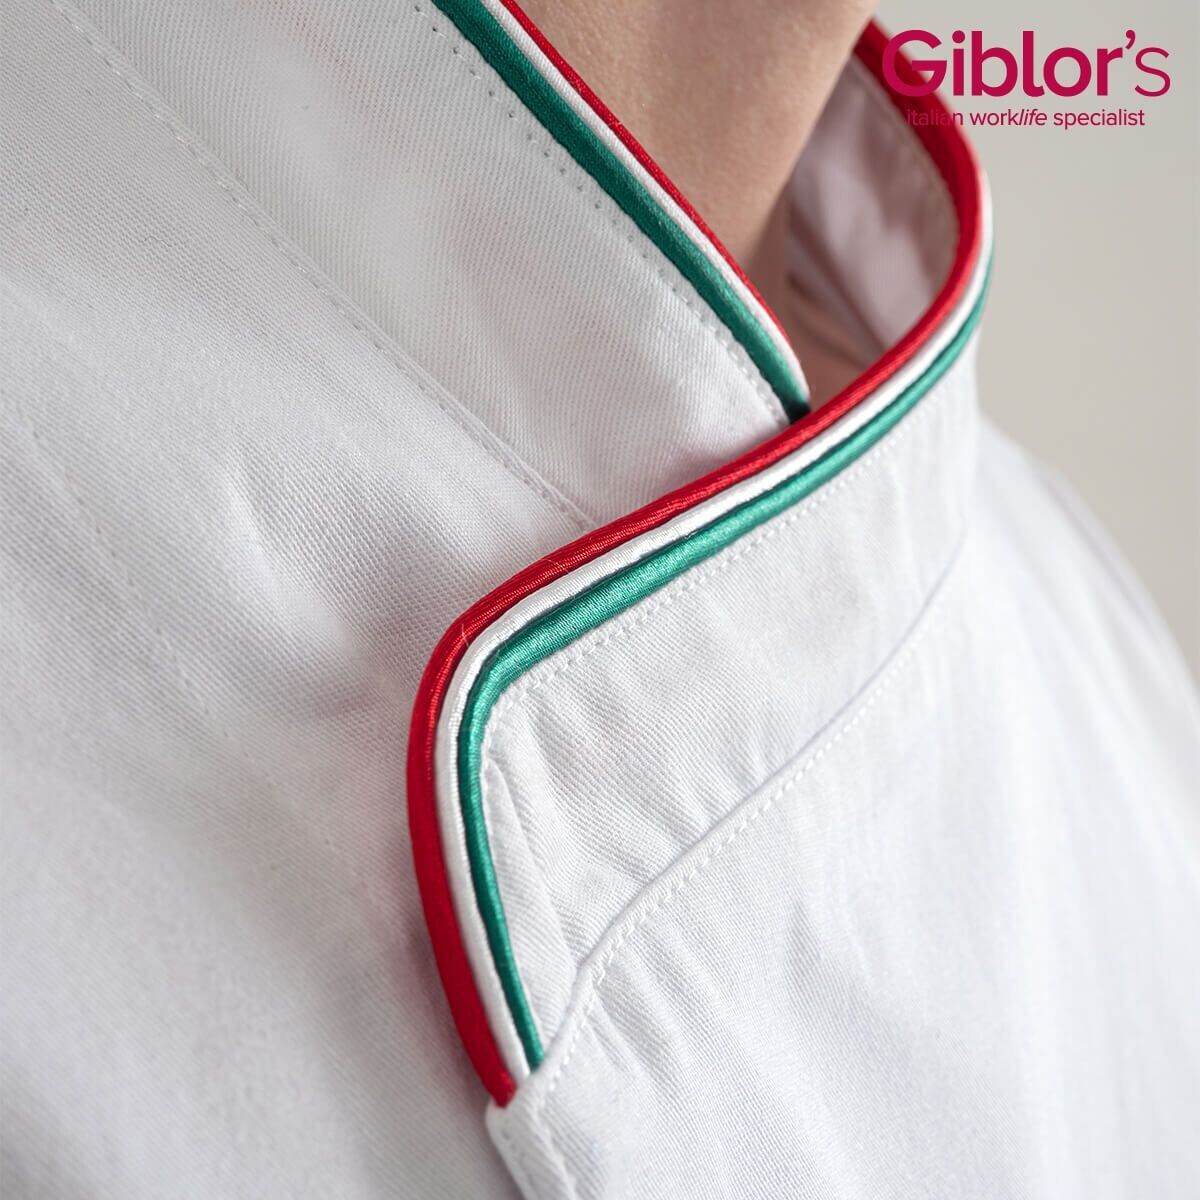 Giacca cuoco Giblor's Patrizio tricolore, Colore pipping*: Tricolore